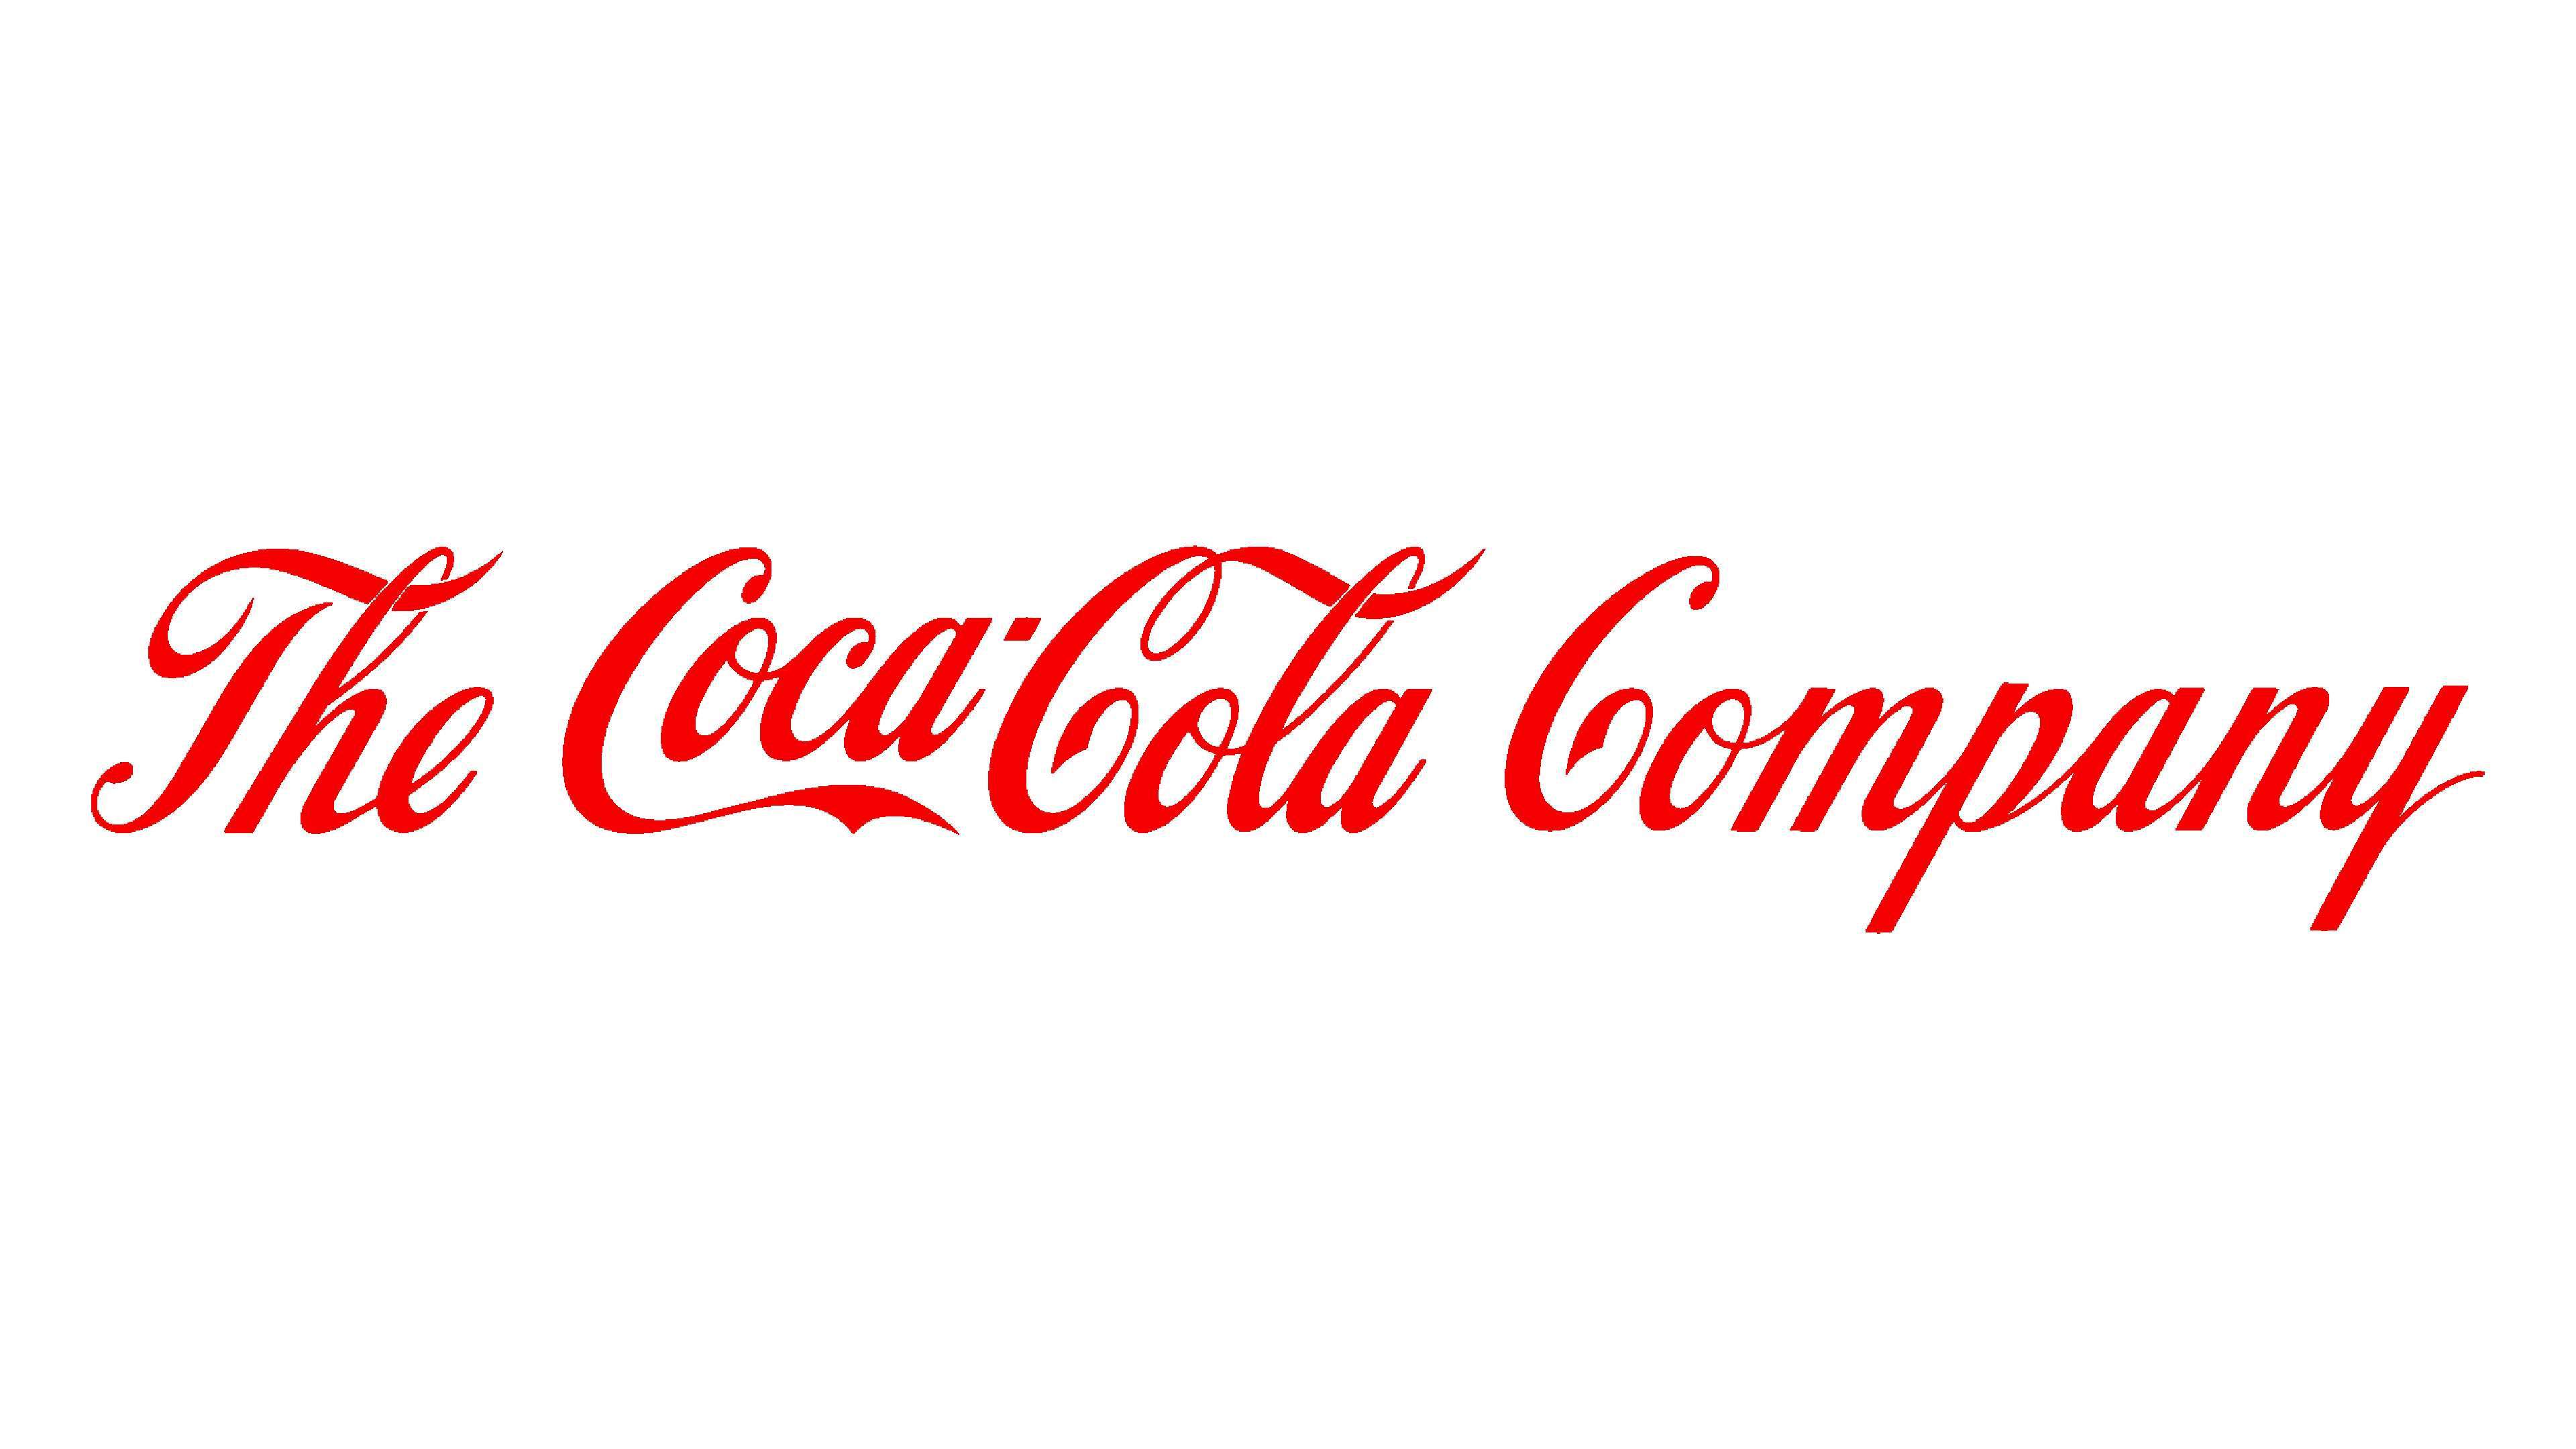 Logo công ty Coca Cola tách nền